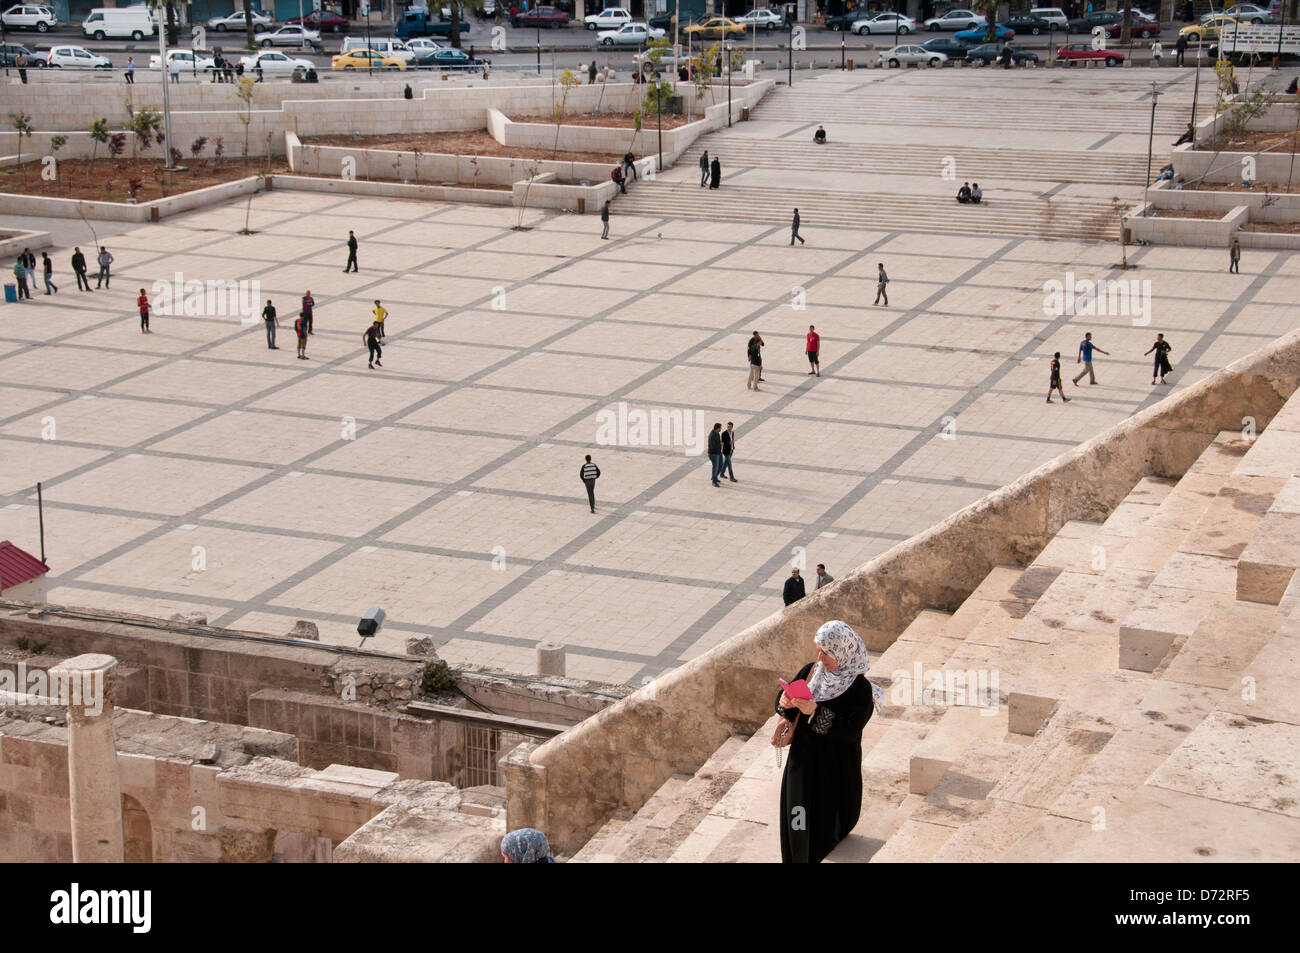 La Jordanie, Amman. Amphithéâtre romain. Femme regardant son portable tandis que les garçons jouent au football dans l'arrière-plan. Banque D'Images